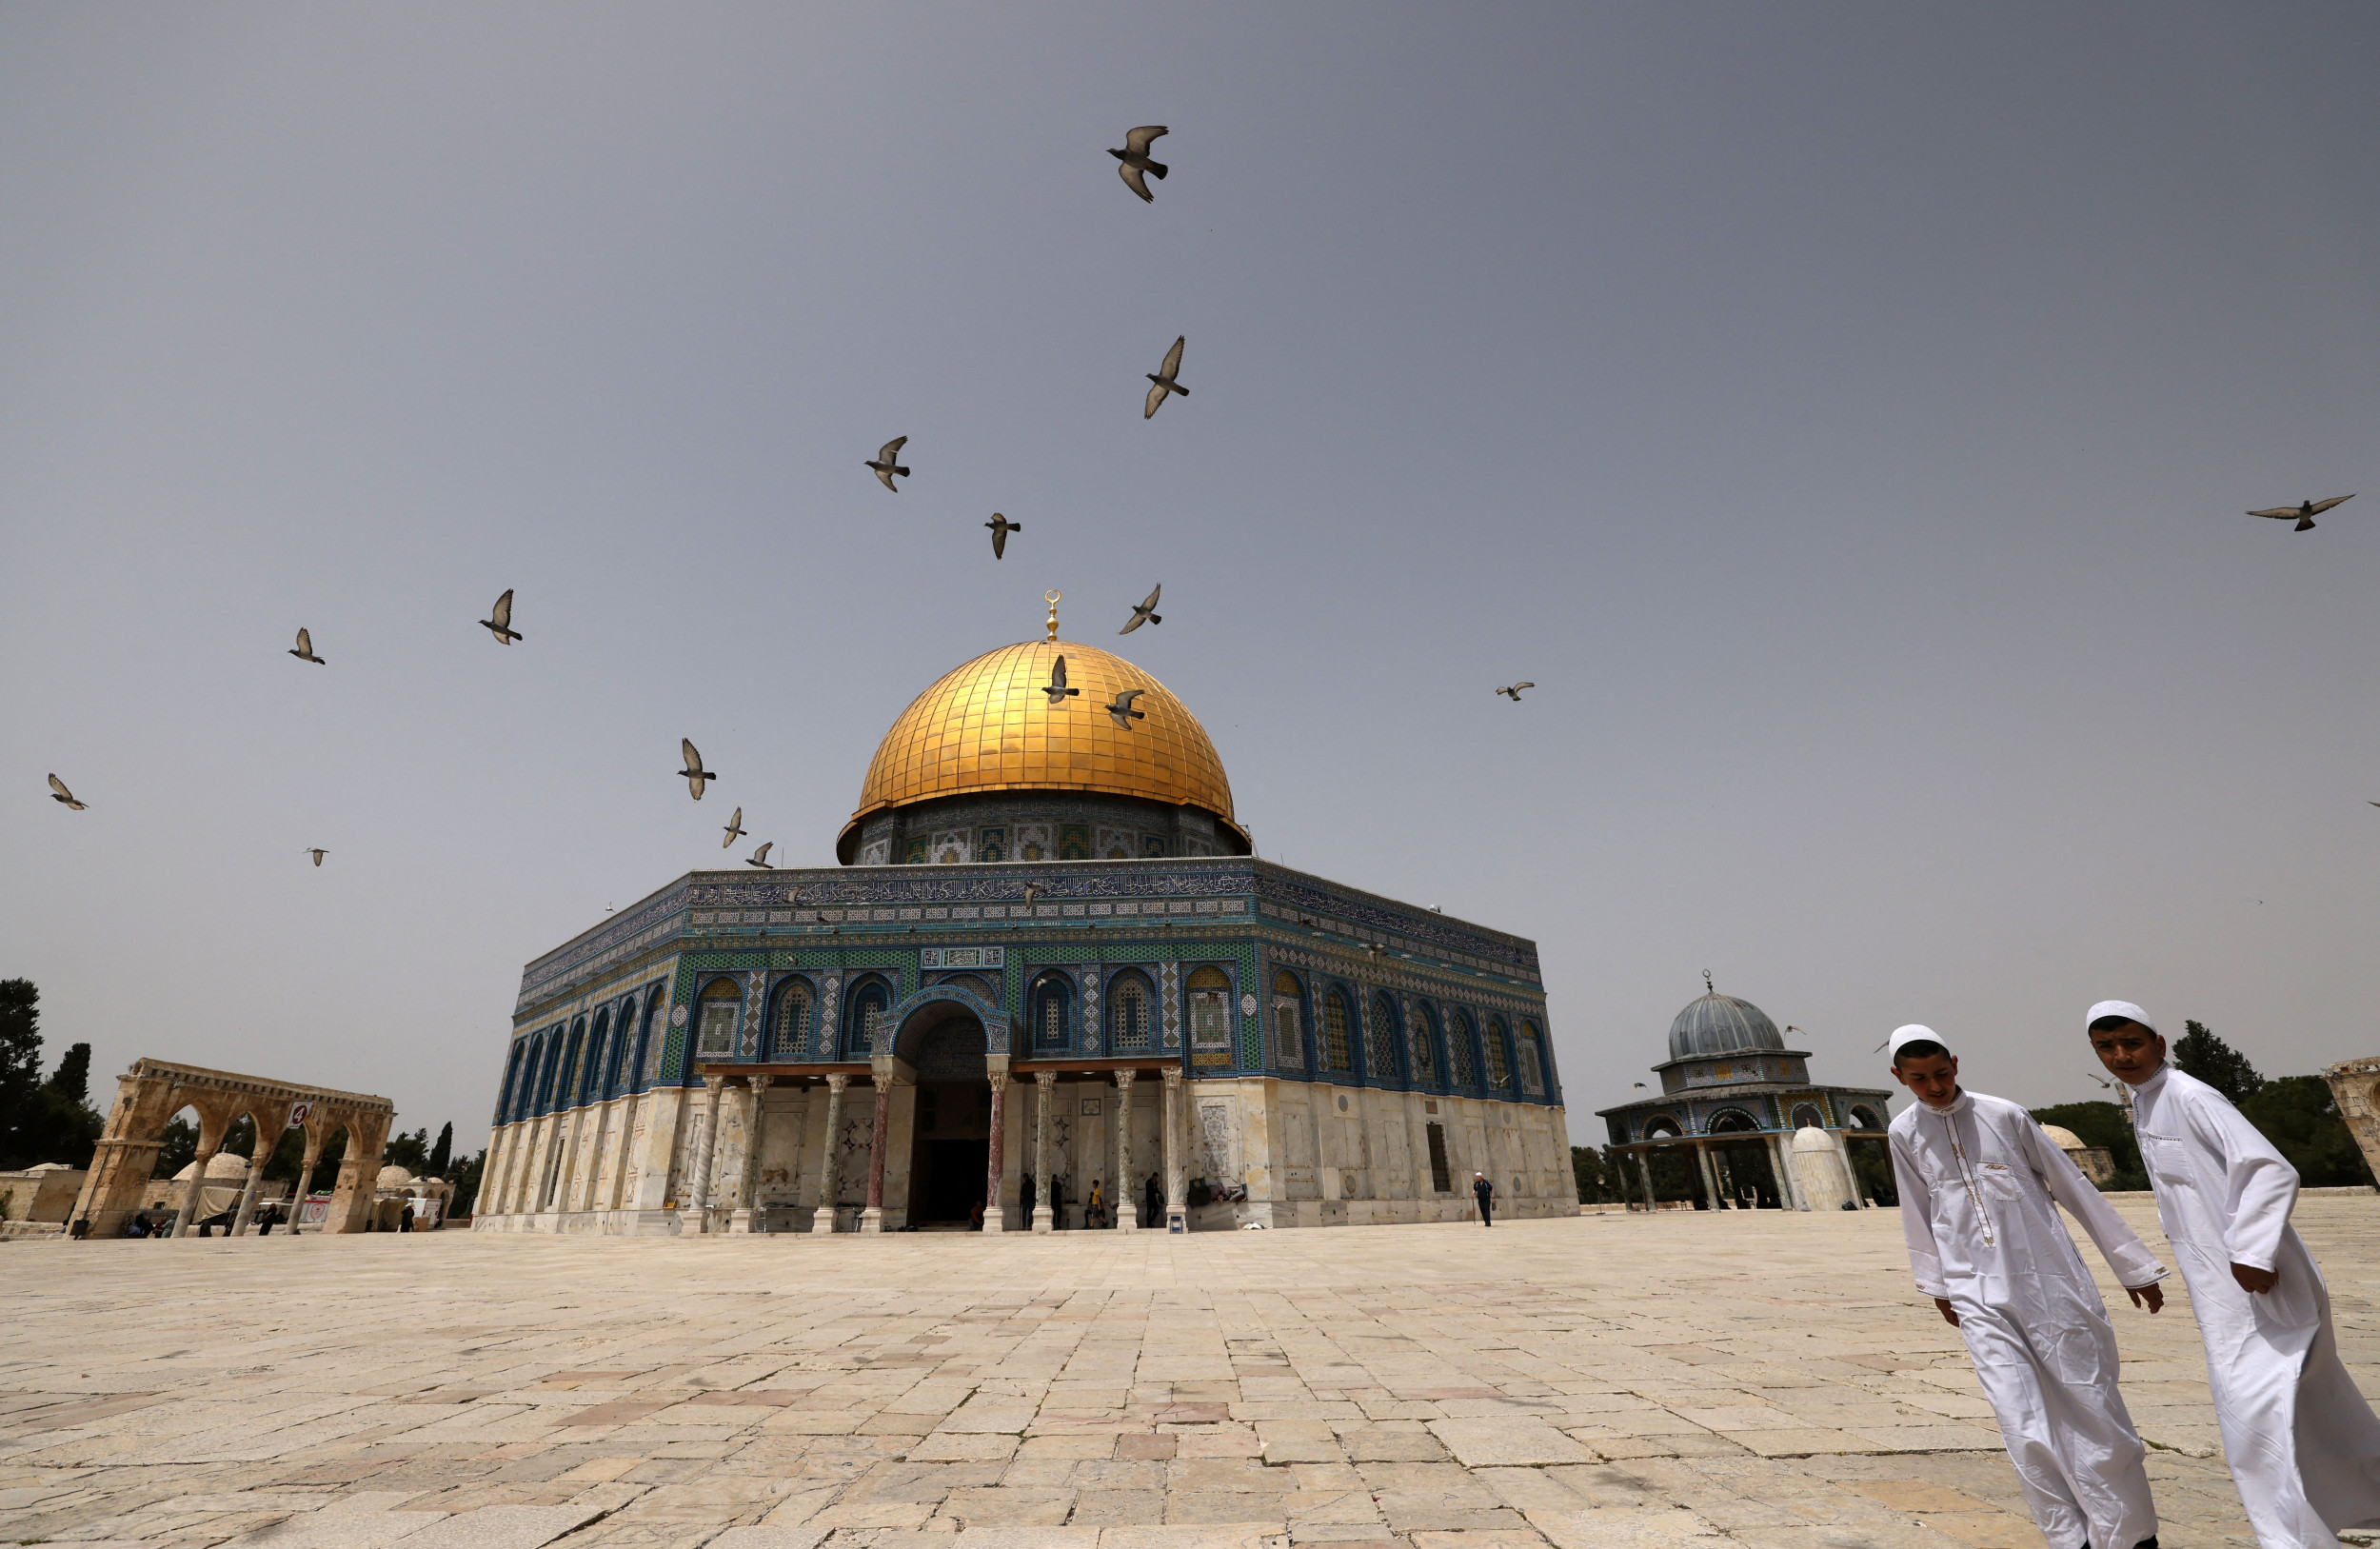 мечети в израиле